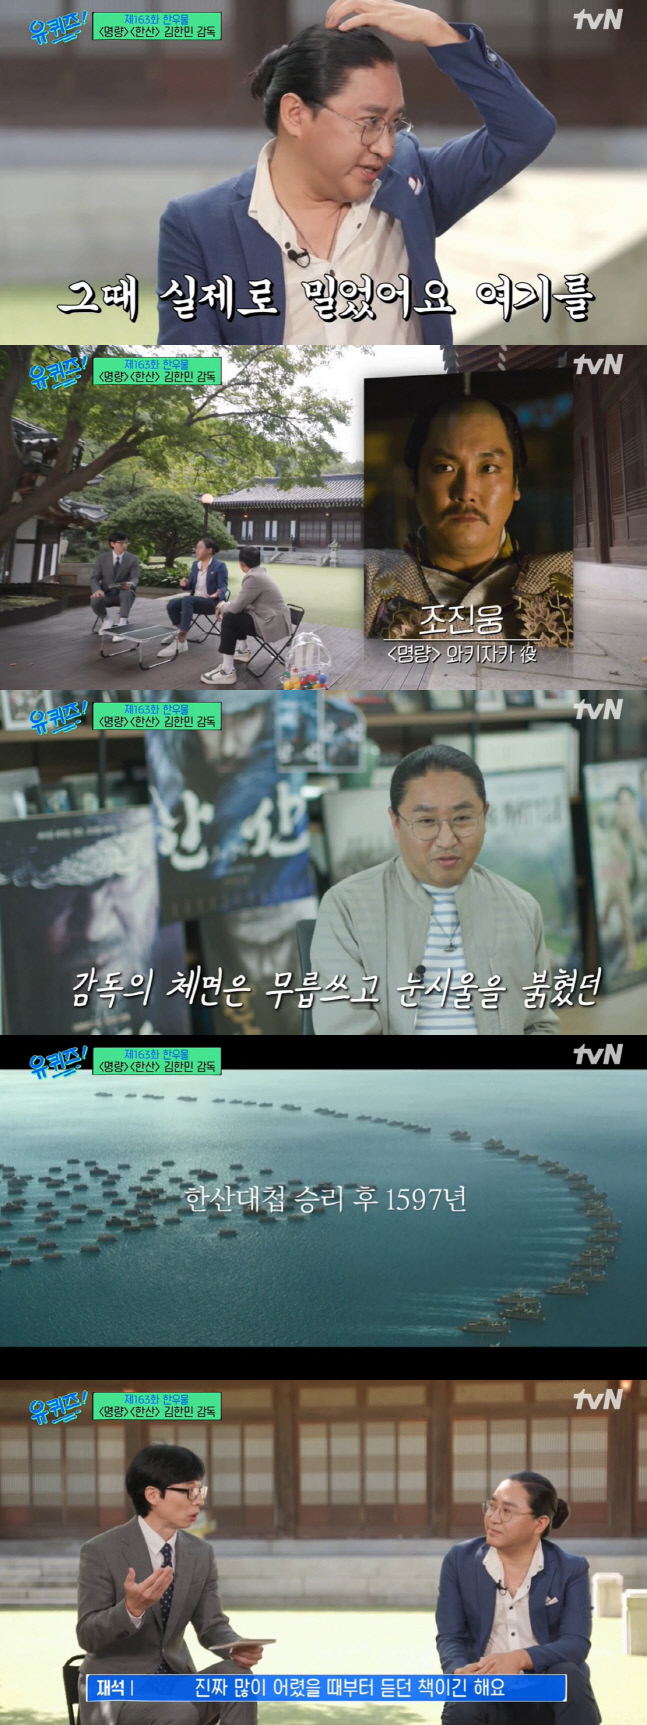 tvN‘유퀴즈 온 더 블럭’ 출처 | tvN